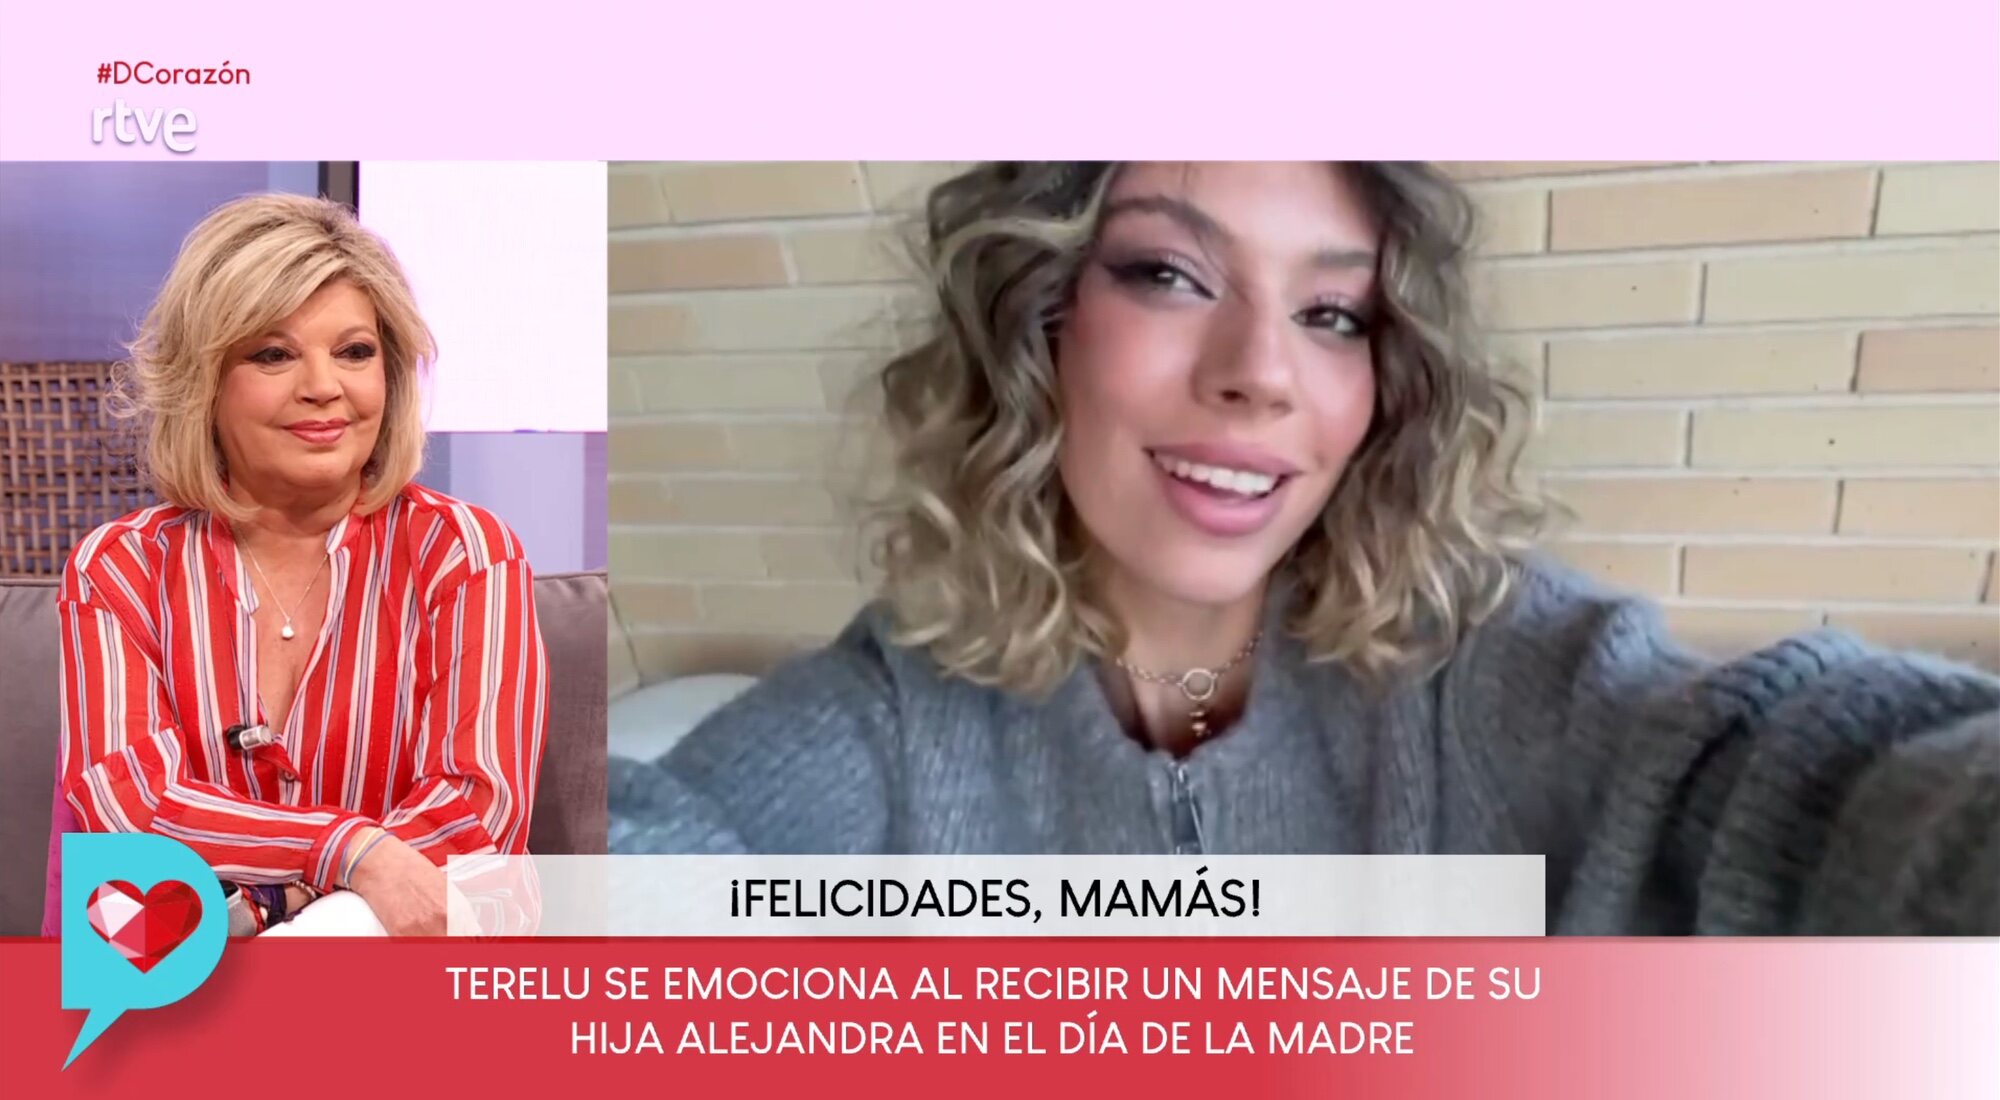 Terelu Campos recibe el vídeo de Alejandra Rubio en 'D Corazón'